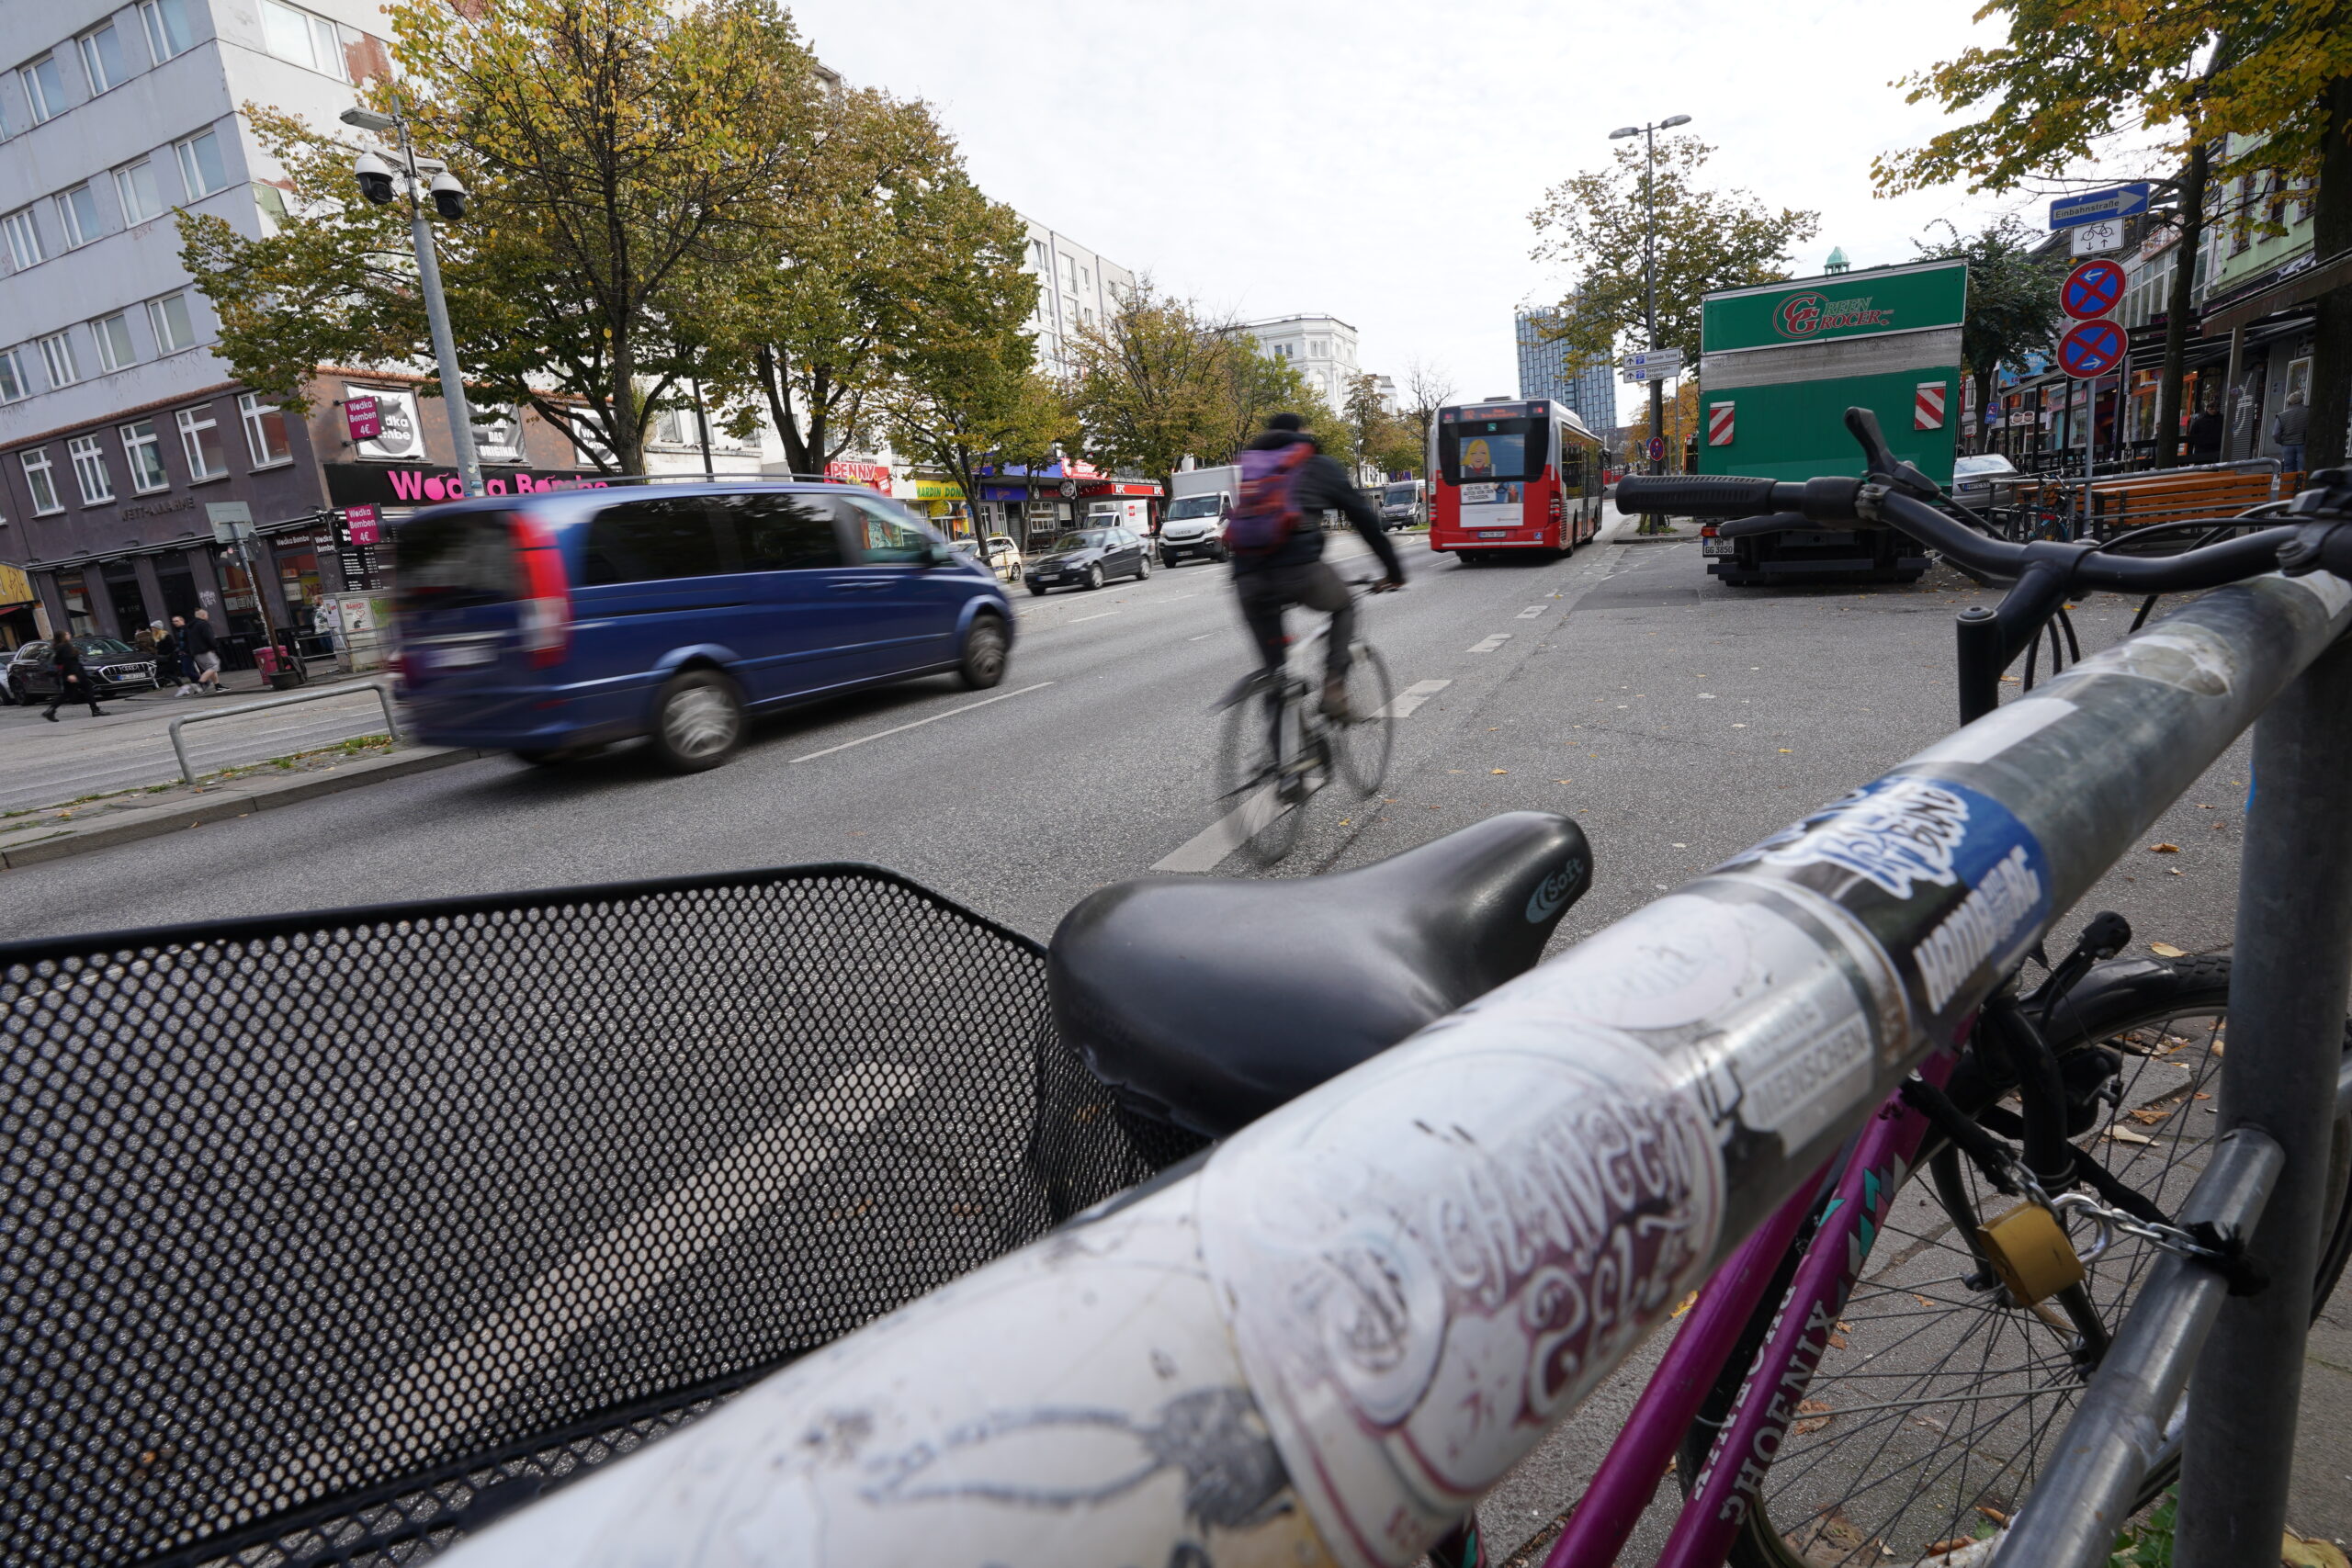 Gute Nachrichten für Fahrradfahrer: Auf der Reeperbahn soll es künftig einen breiten Radweg geben.